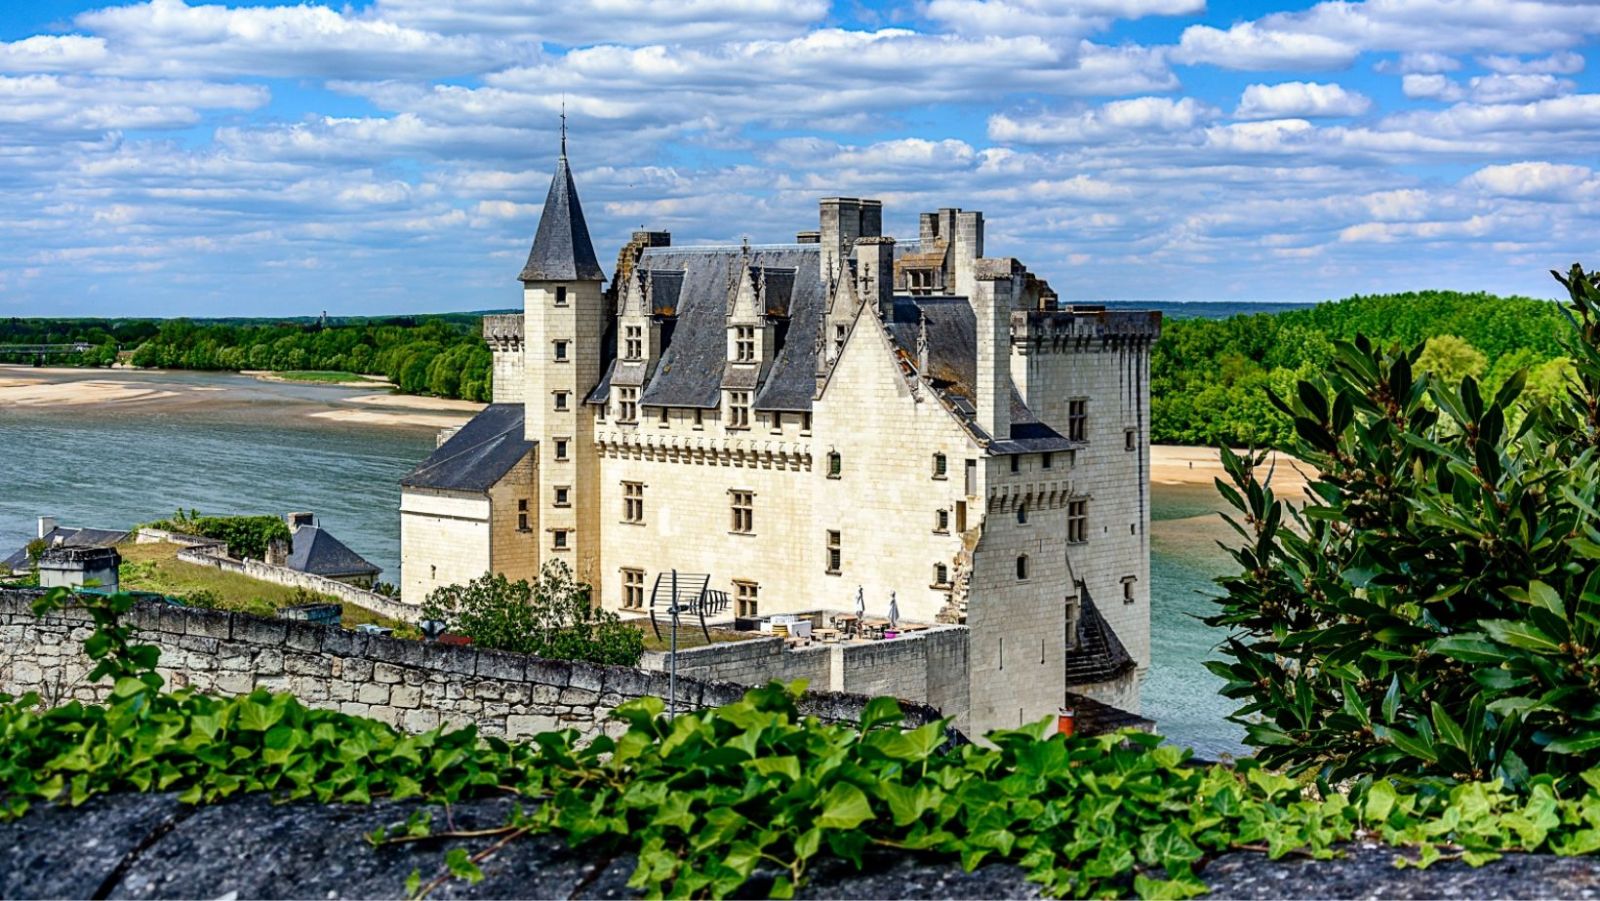 Ce village ligérien aux 150 maisons de tuffeau blanc abrite l'un des plus beaux châteaux de la Loire